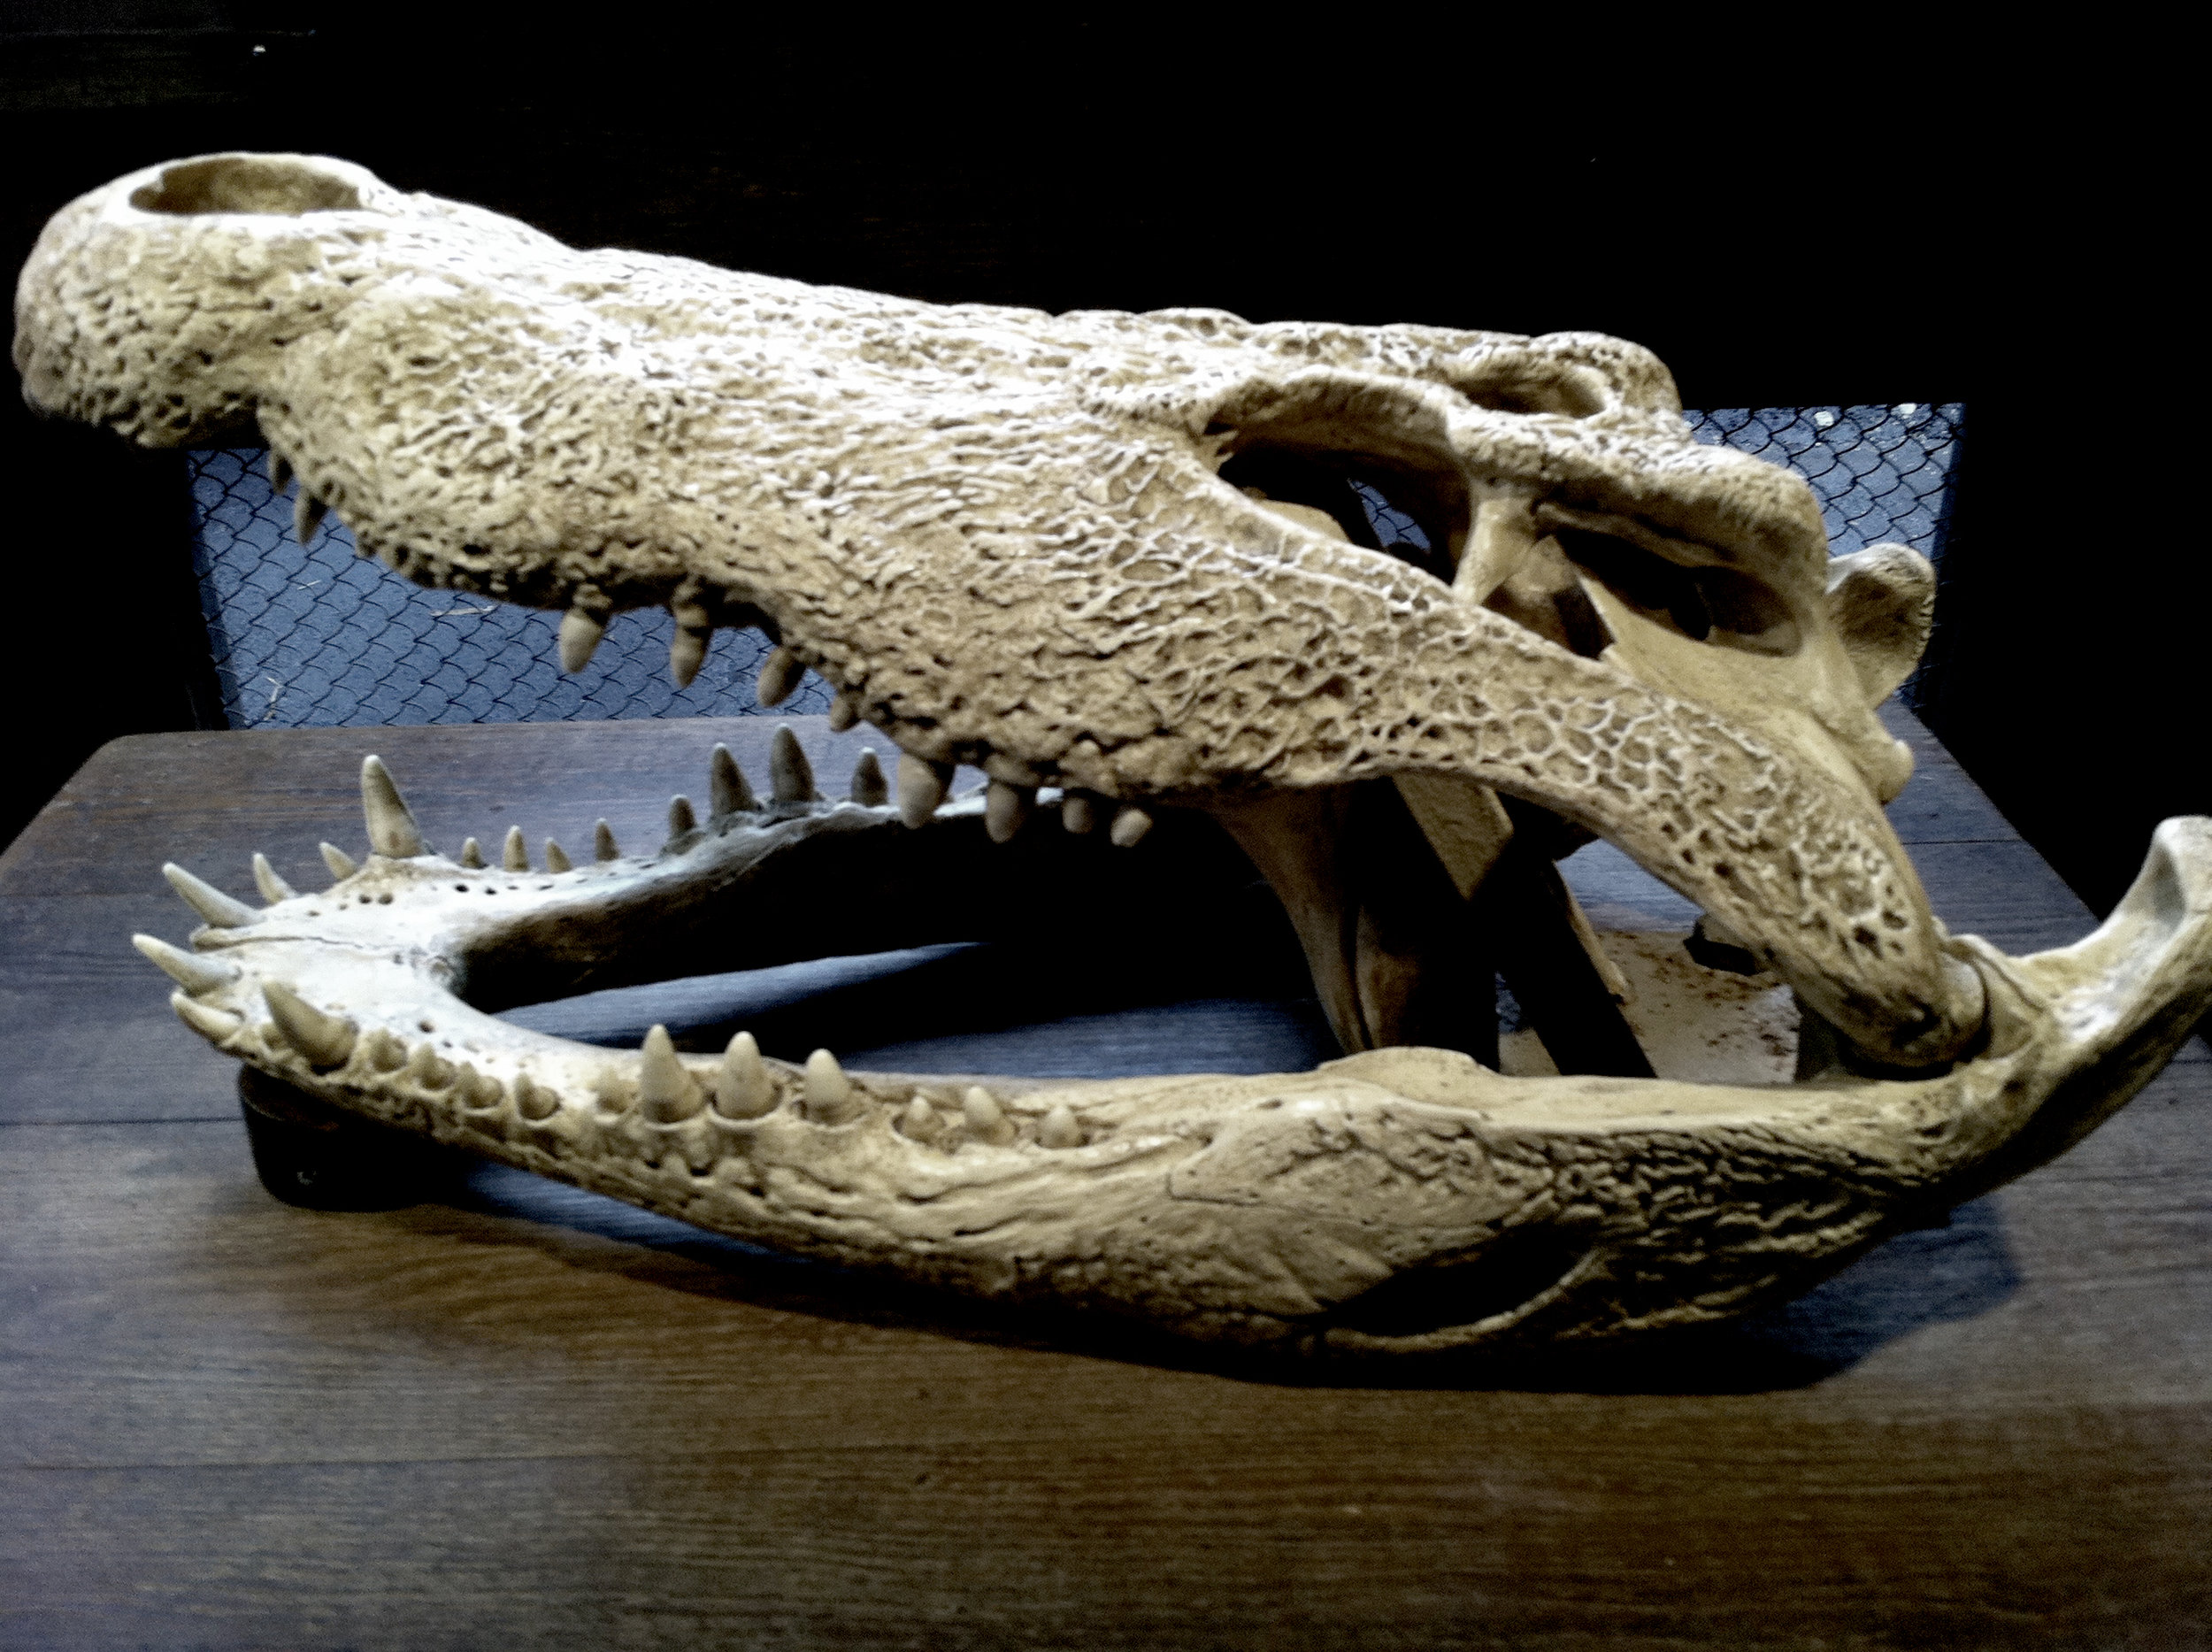  Crâne d'un crocodile    